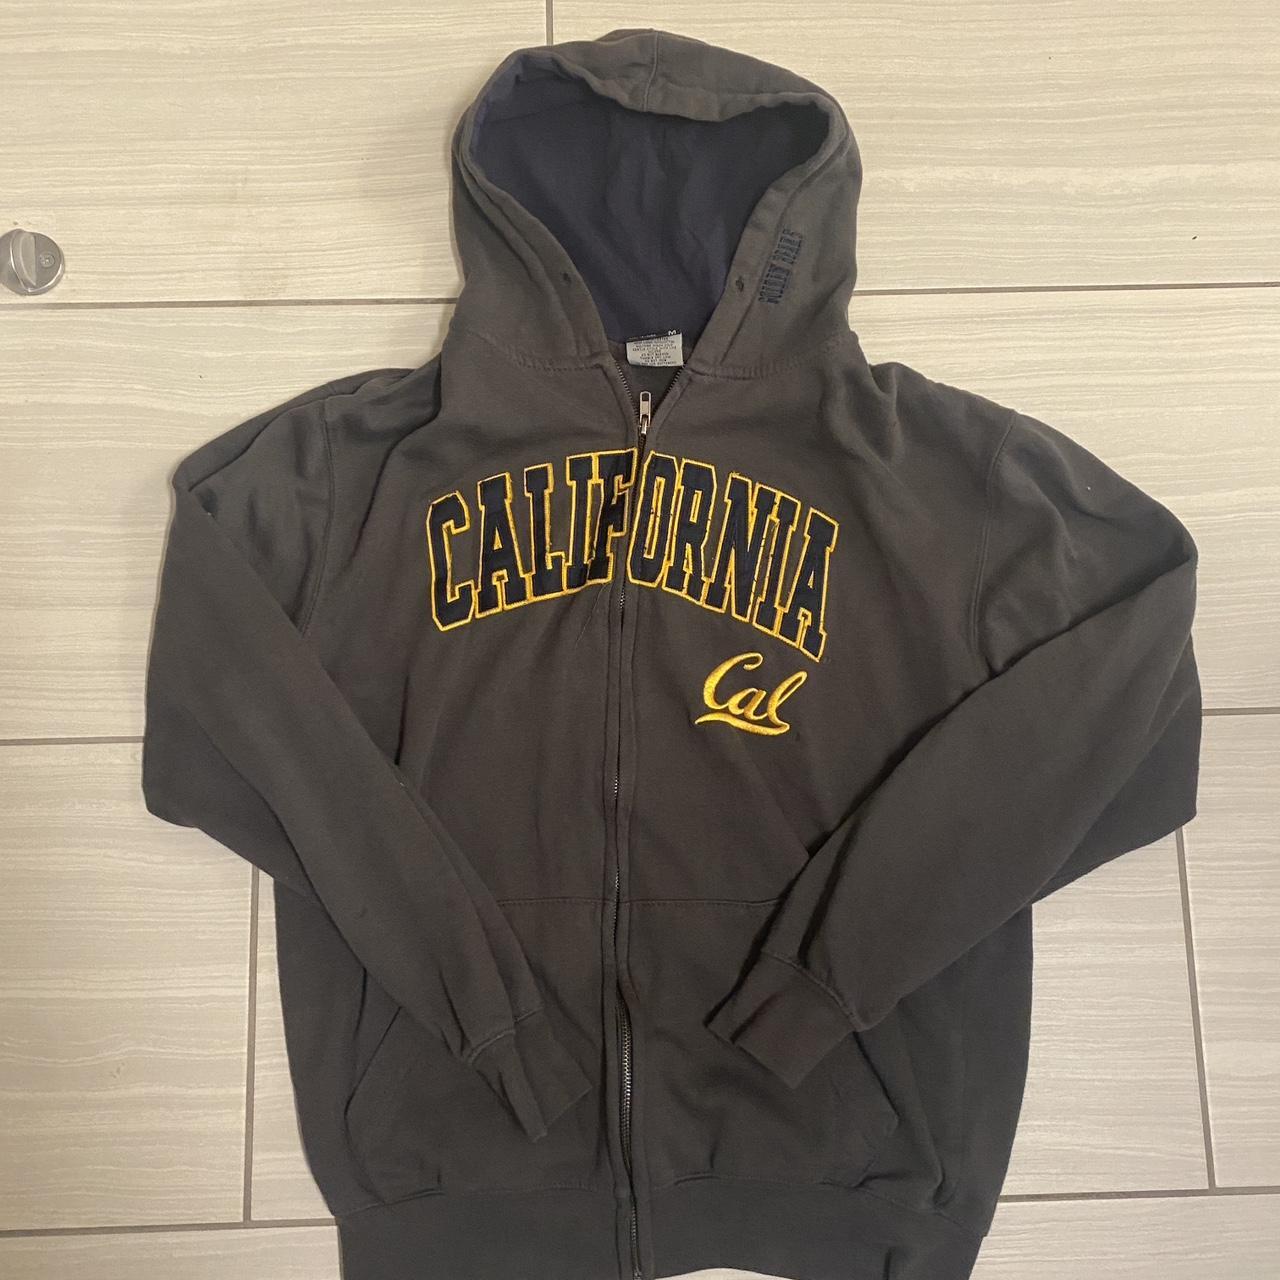 Vintage Cal jacket Retro California zip up hooded... - Depop